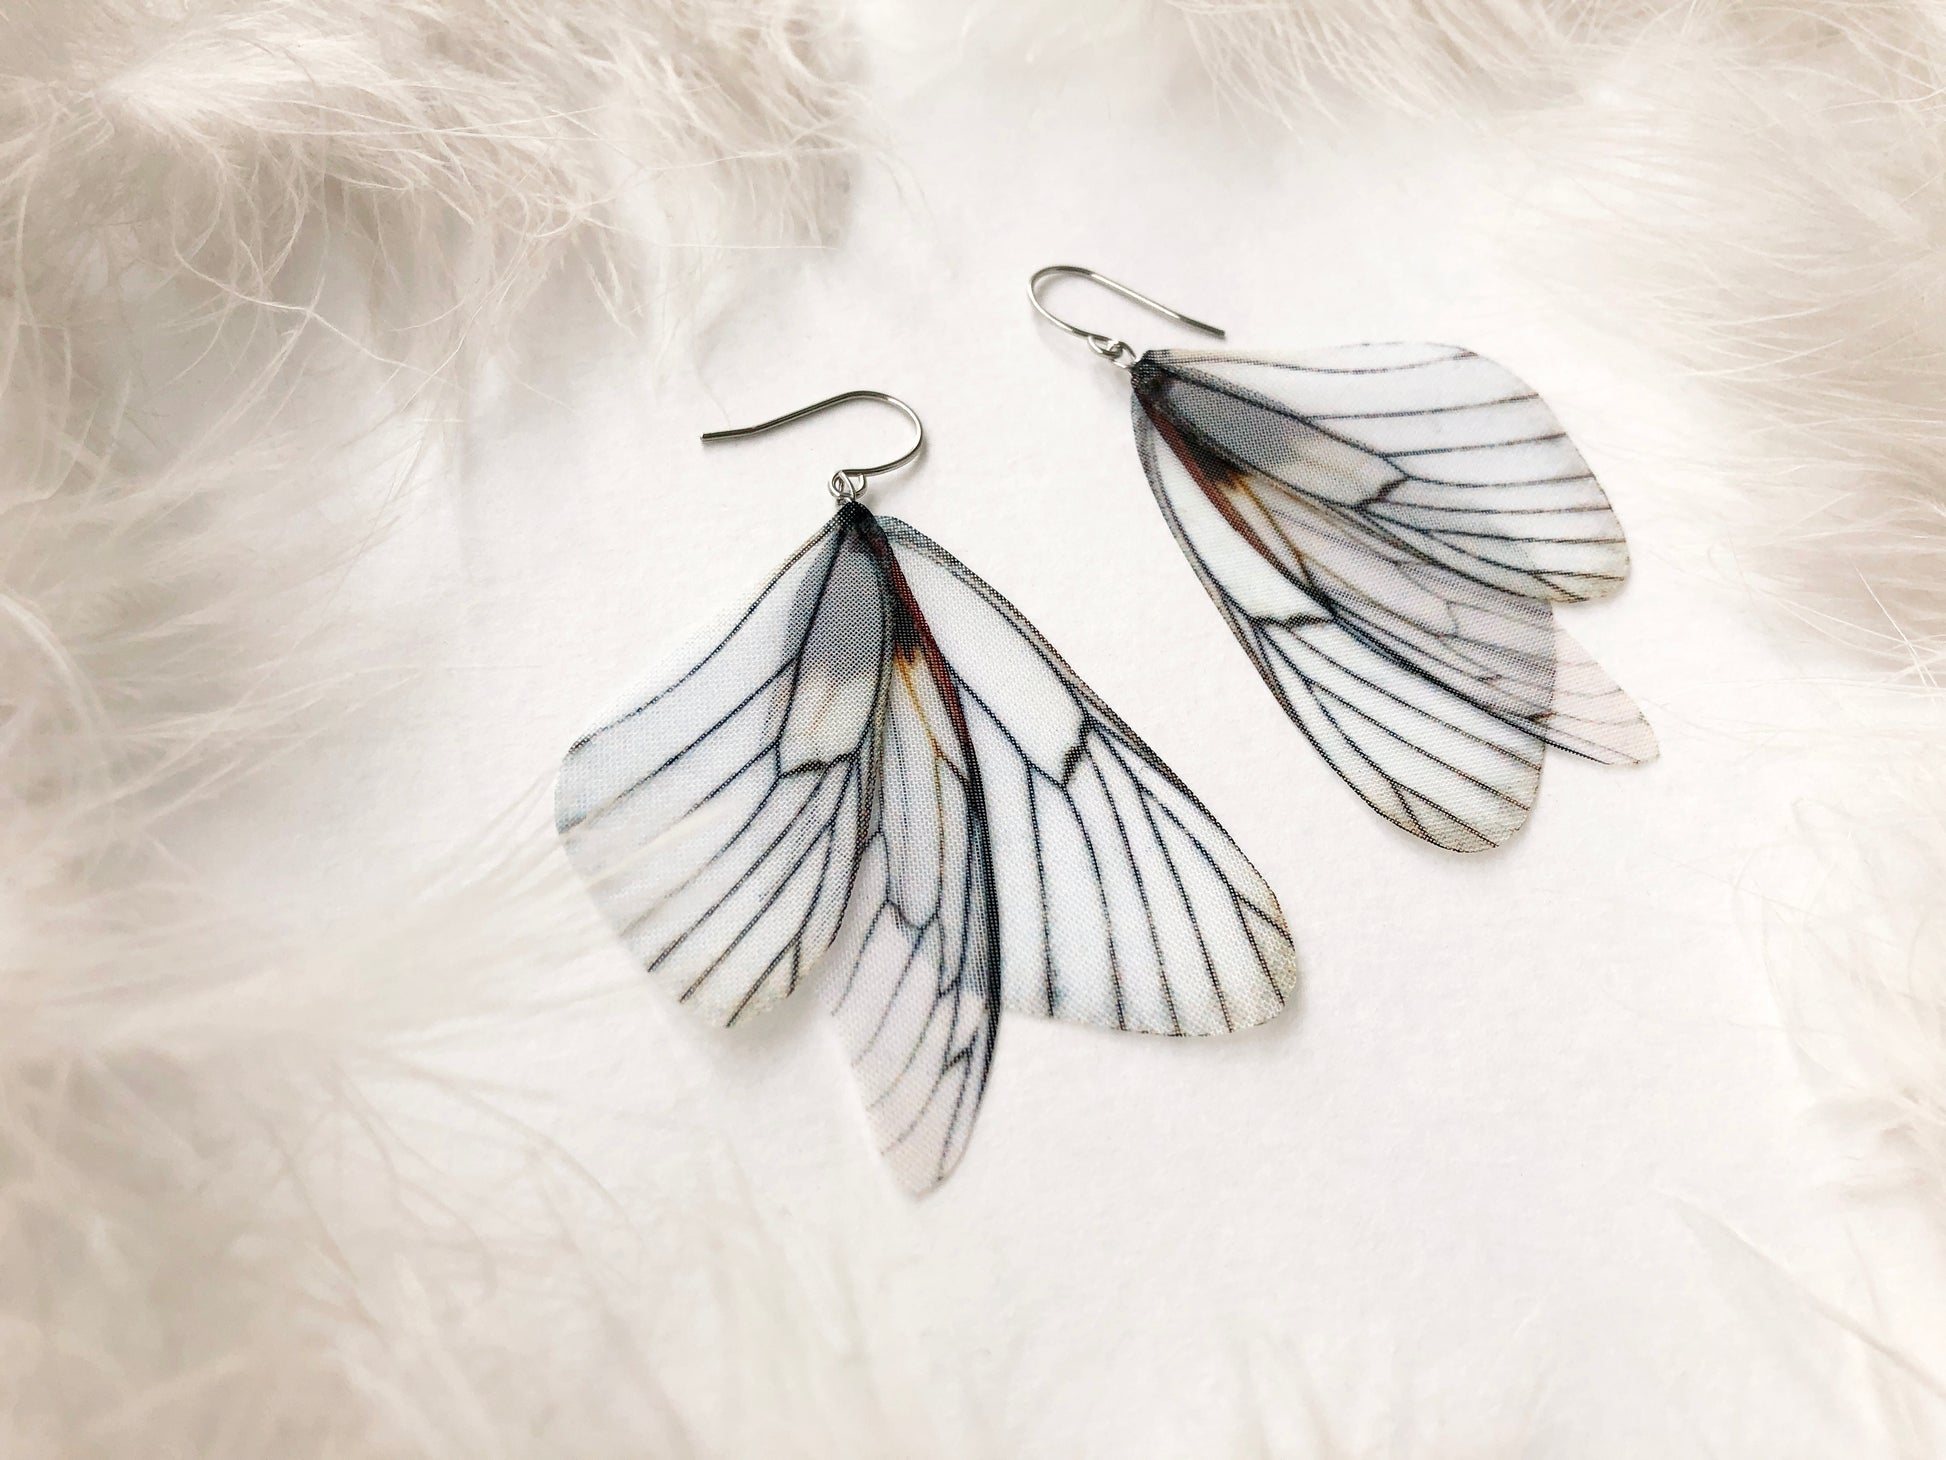 White butterfly earrings handmade of silk on white background